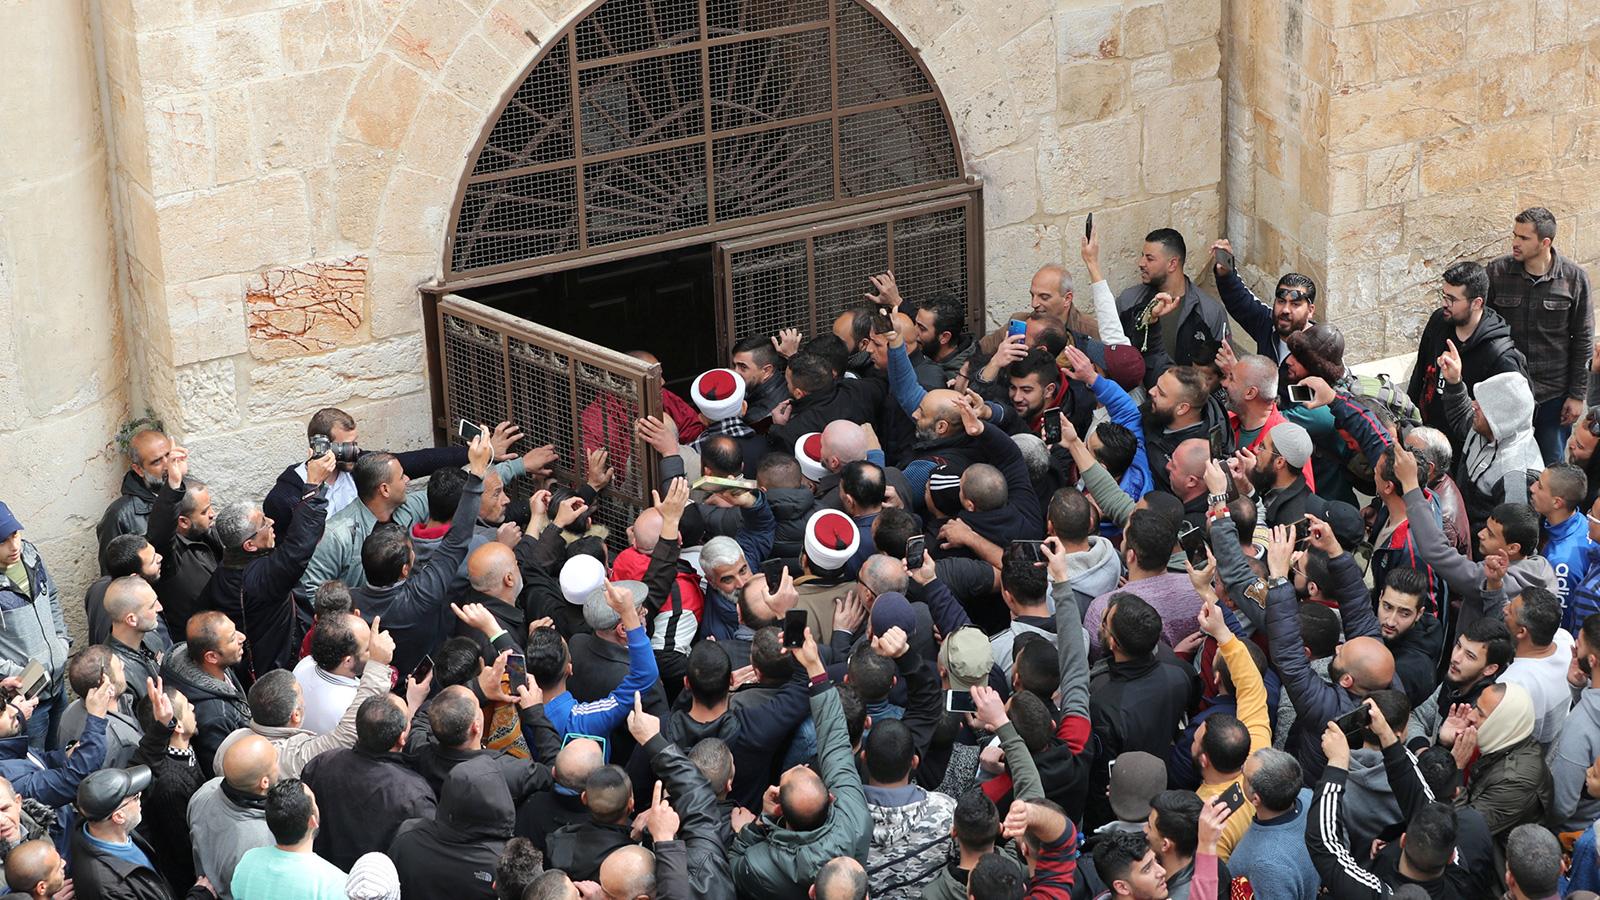 المقدسيُّون يفتحون باب "مصلى الرحمة" في المسجد الأقصى بعد اغلاق دام 16 عاما